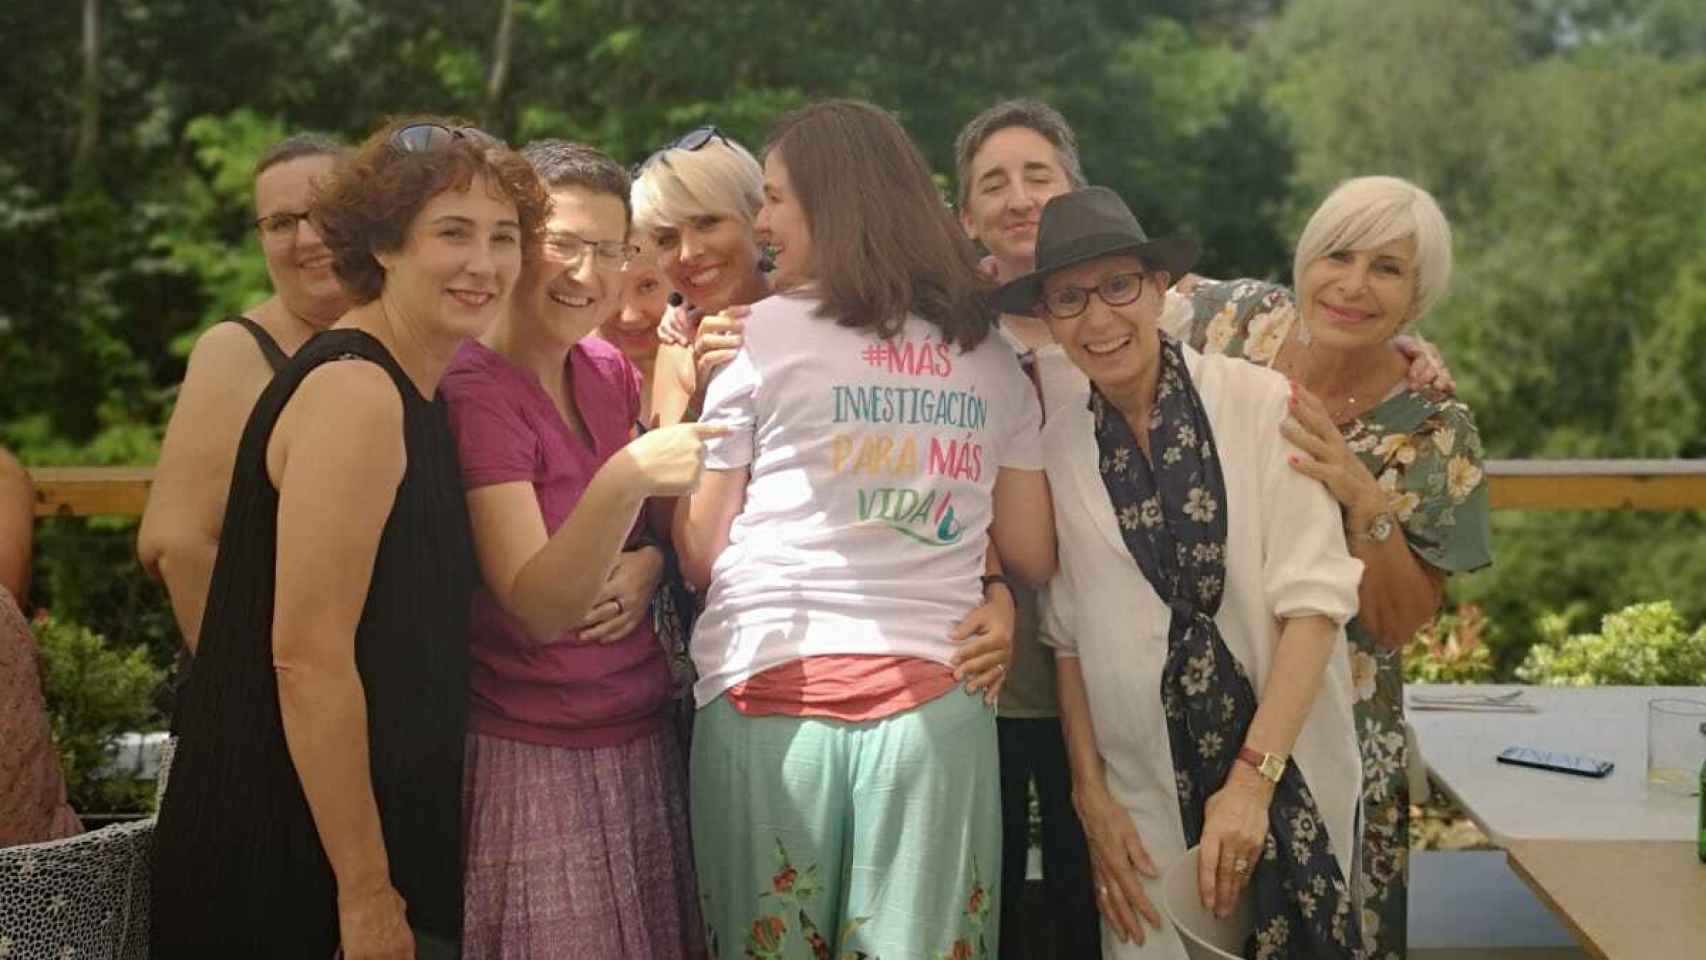 María Caffarel en un encuentro con las pacientes de la asociación Cáncer de Mama Metastásico (CMM) en la que lleva una camiseta con su lema: #másinvetigacionparamásvida. Posando con sombrero negro, su amiga Maite.